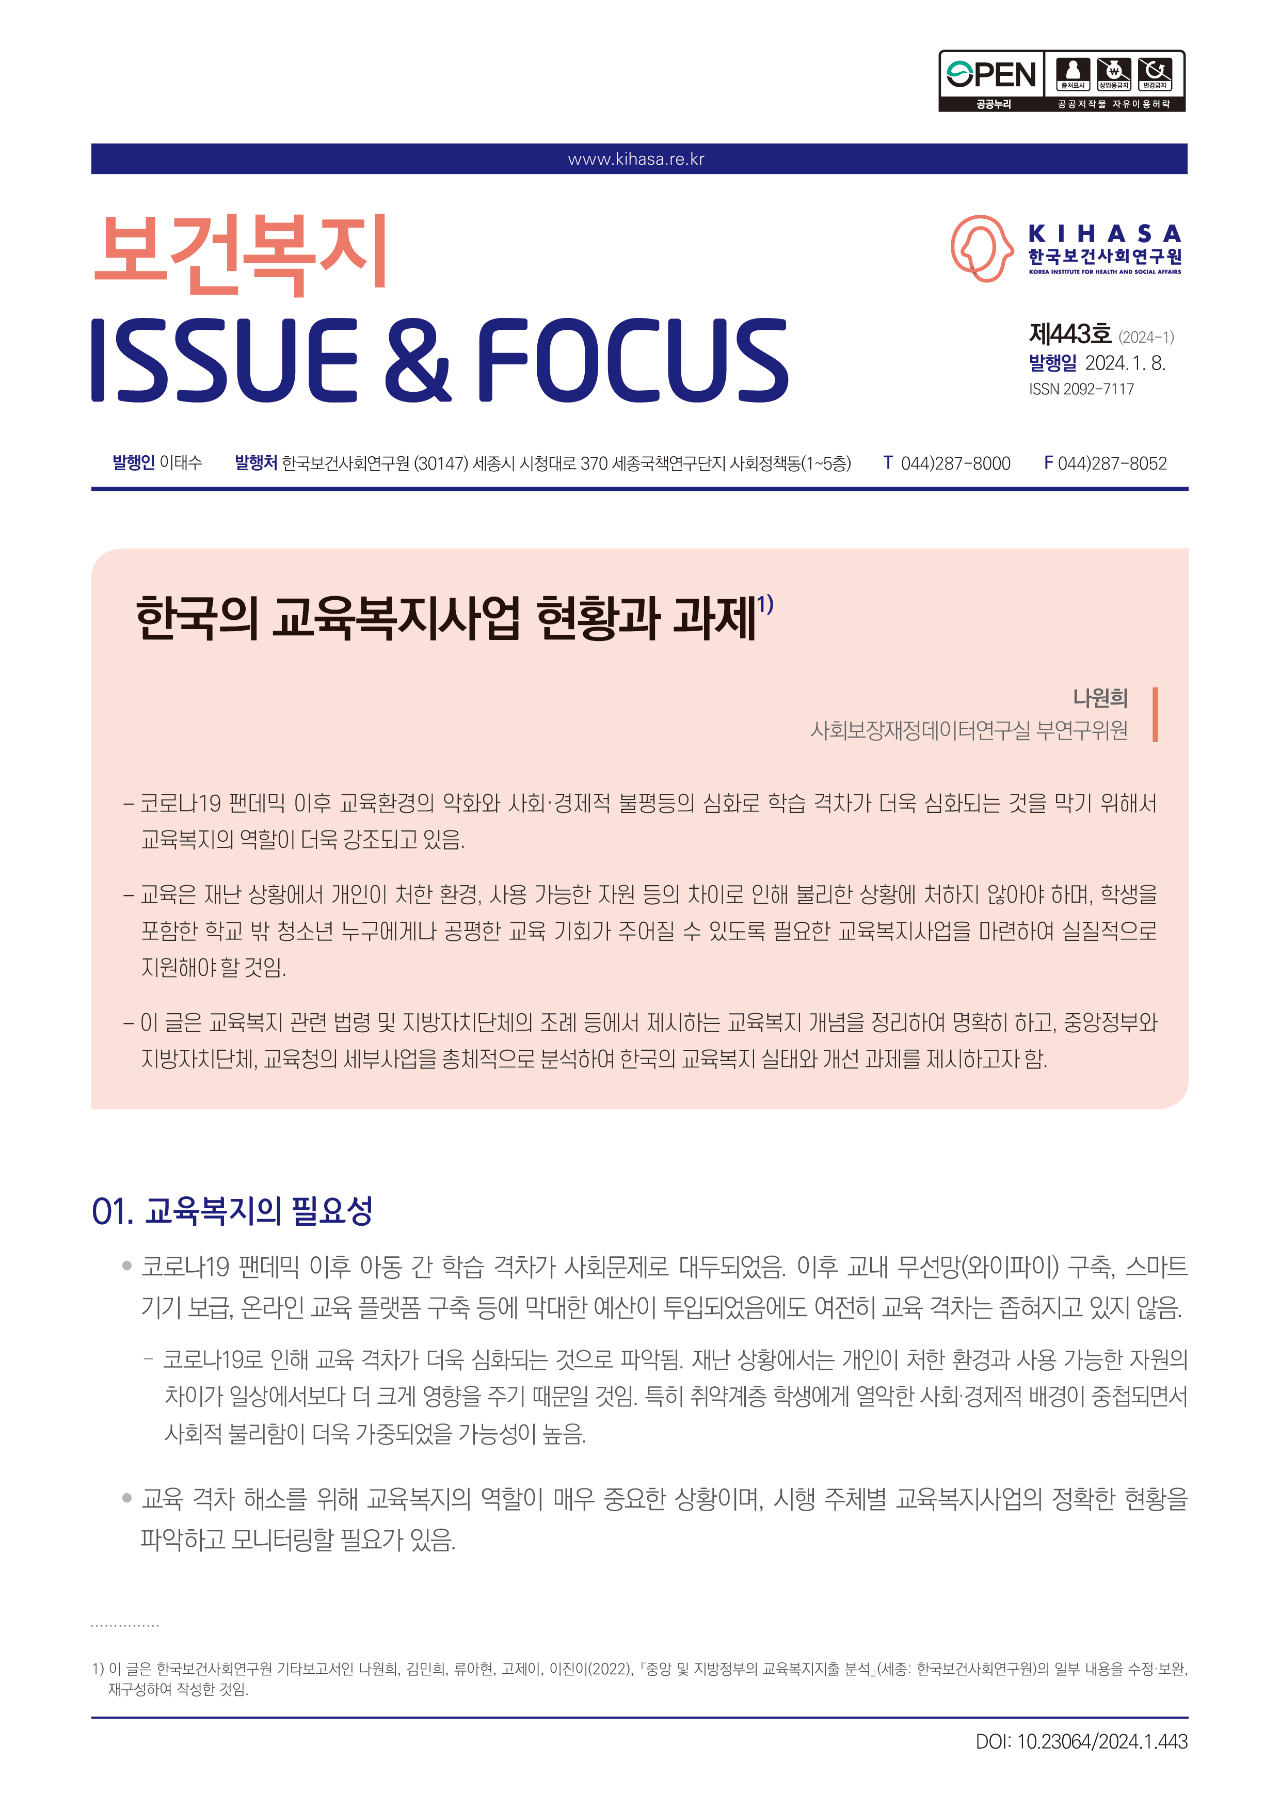 한국의 교육복지 사업 현황과 과제